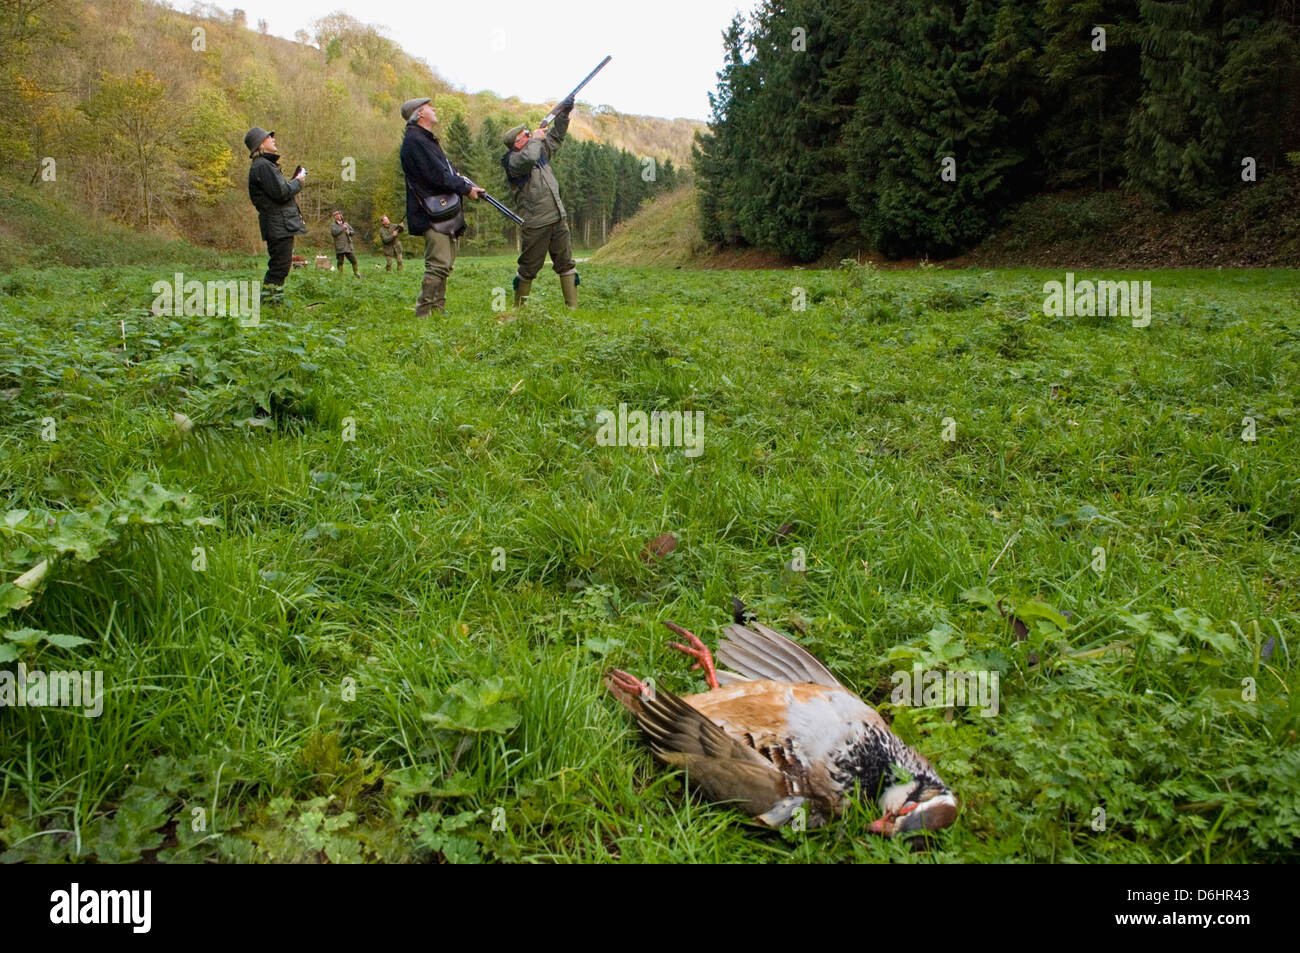 Ungarische Rebhuhn und "Gunners" während eines angetriebenen Shootings in Yorkshire England geerntet Stockfoto